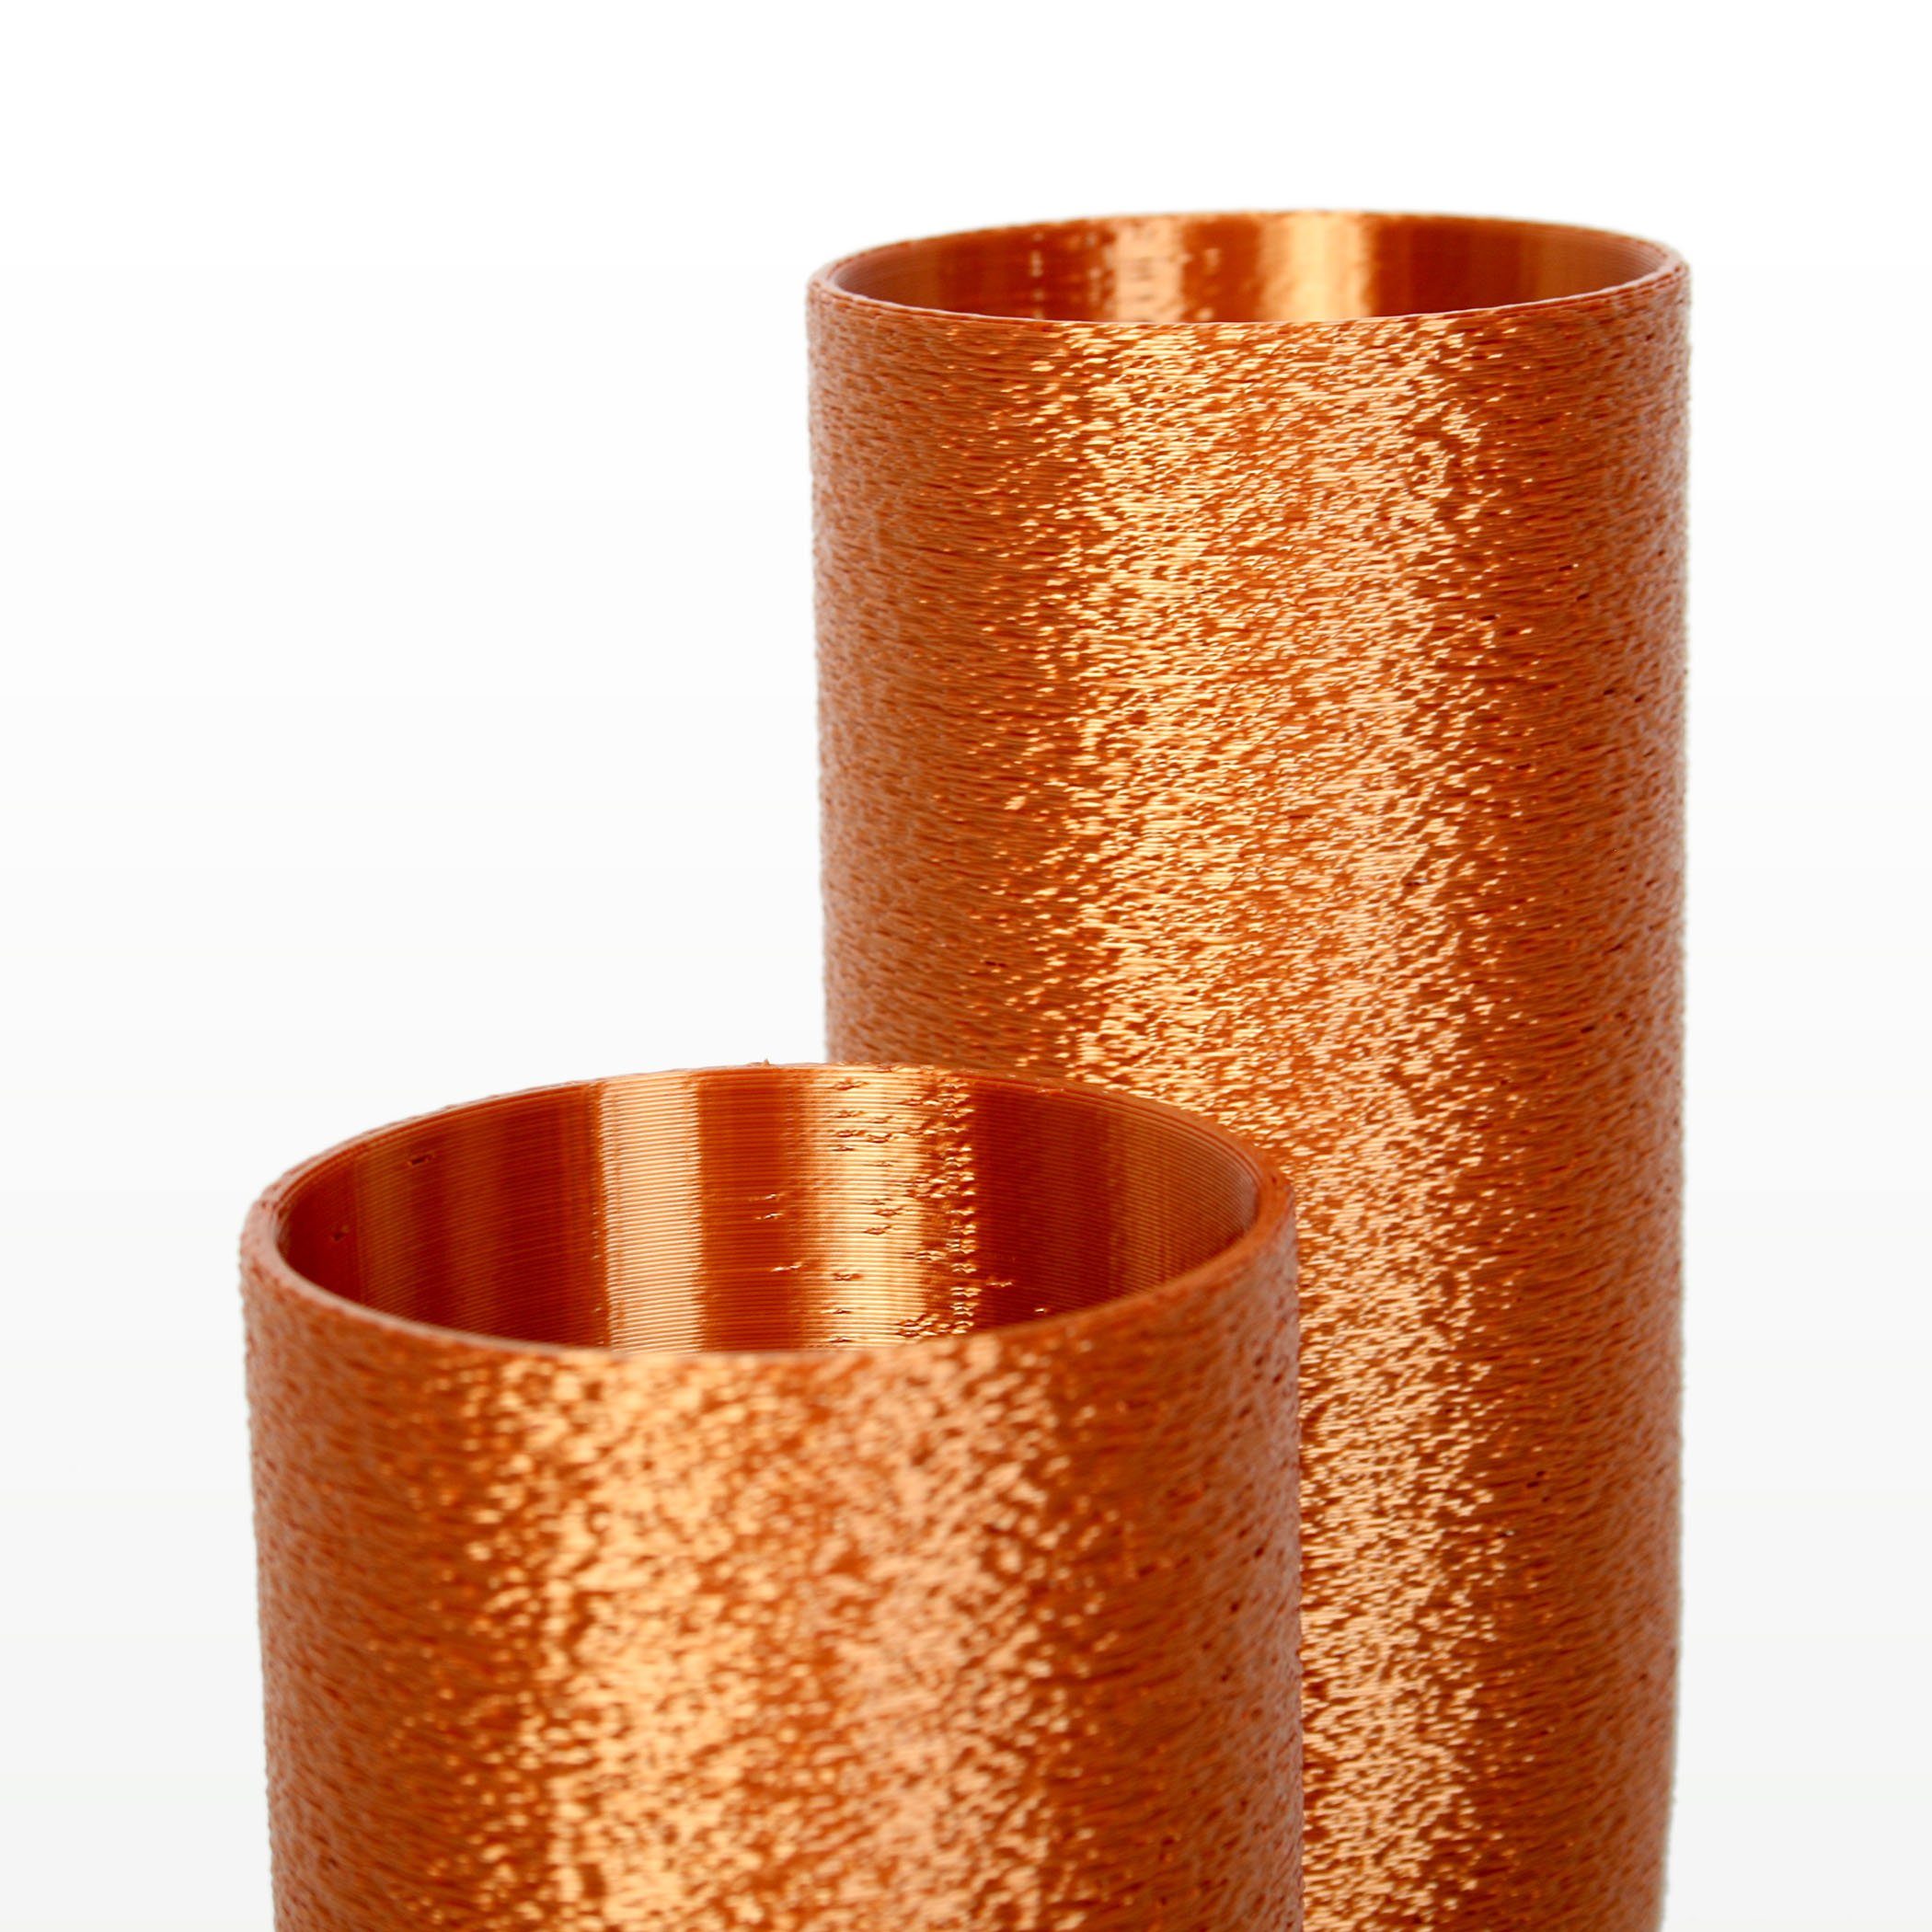 Kreative Feder Dekovase Designer Vase nachwachsenden Rohstoffen; aus Bronze bruchsicher wasserdicht & aus Bio-Kunststoff, – Blumenvase Dekorative